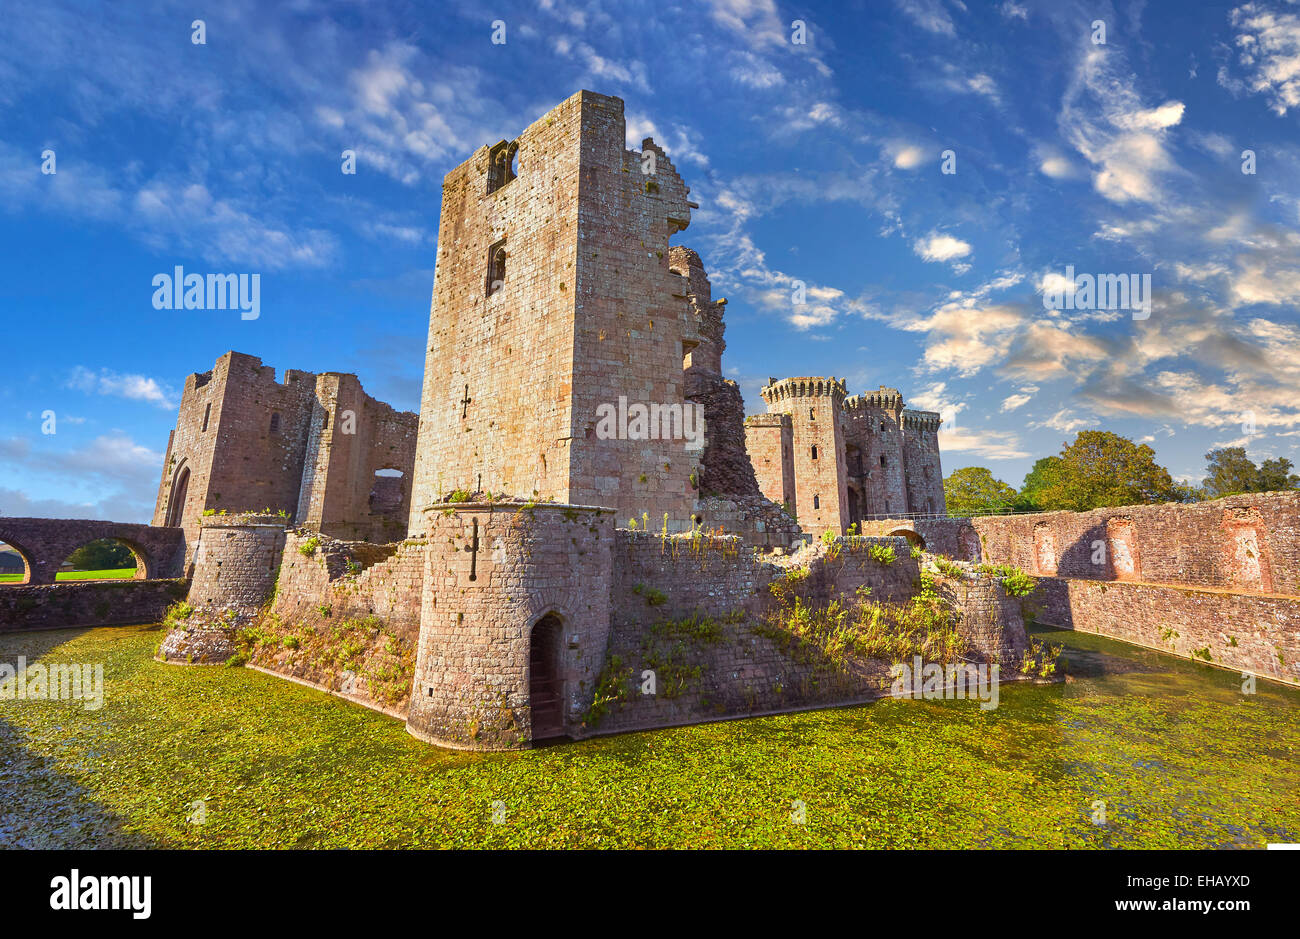 Ruines de la cité médiévale du château de Raglan Rhaglan (Monmothshire), le Pays de Galles. Banque D'Images